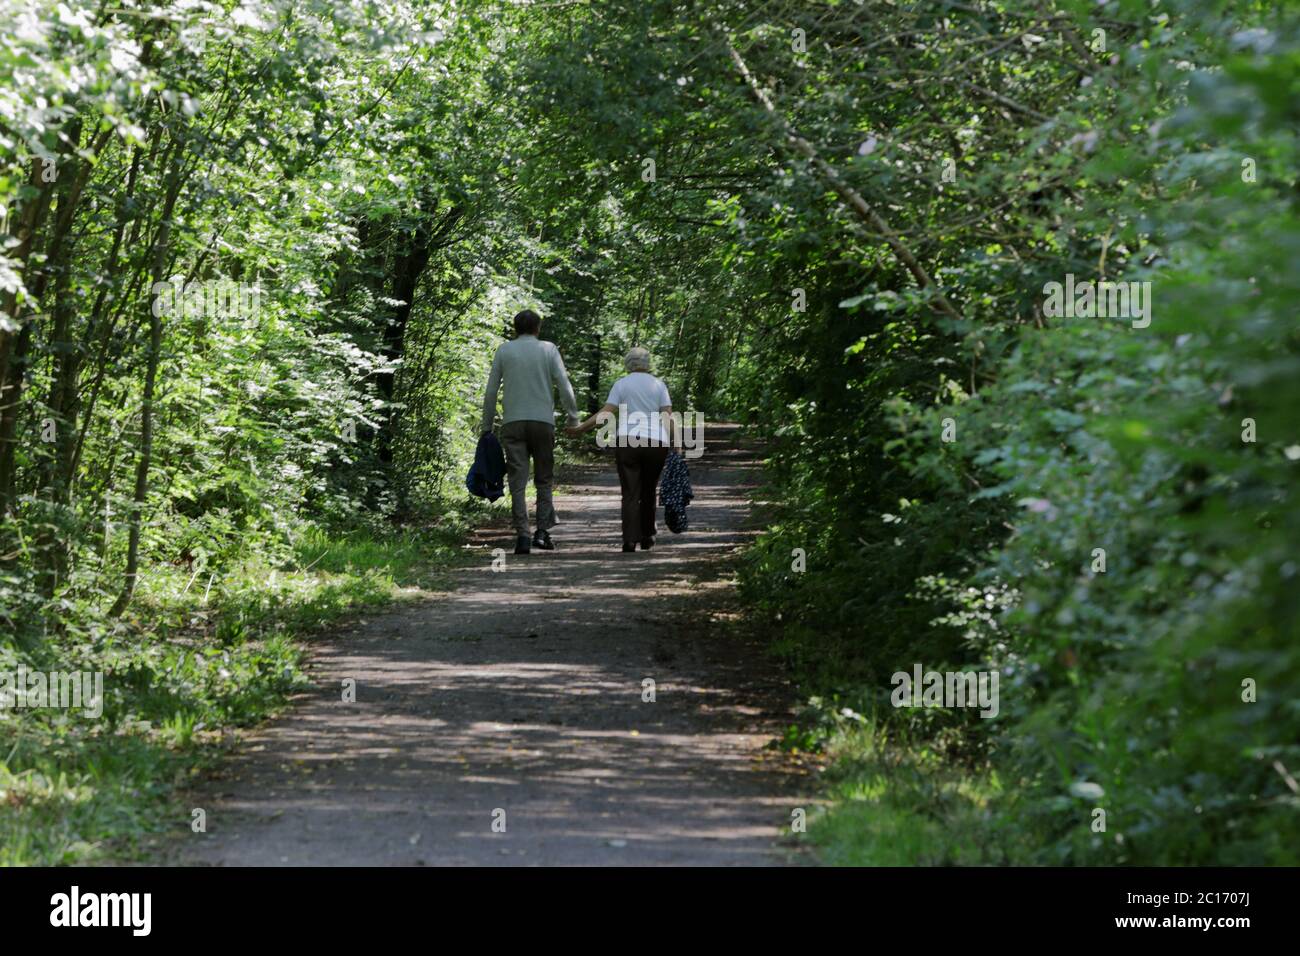 Ein älteres Paar, das Hand in Hand einen Weg unter einem Baumkronen aus grünen Blättern entlang geht und einen Tunnel bildet Stockfoto